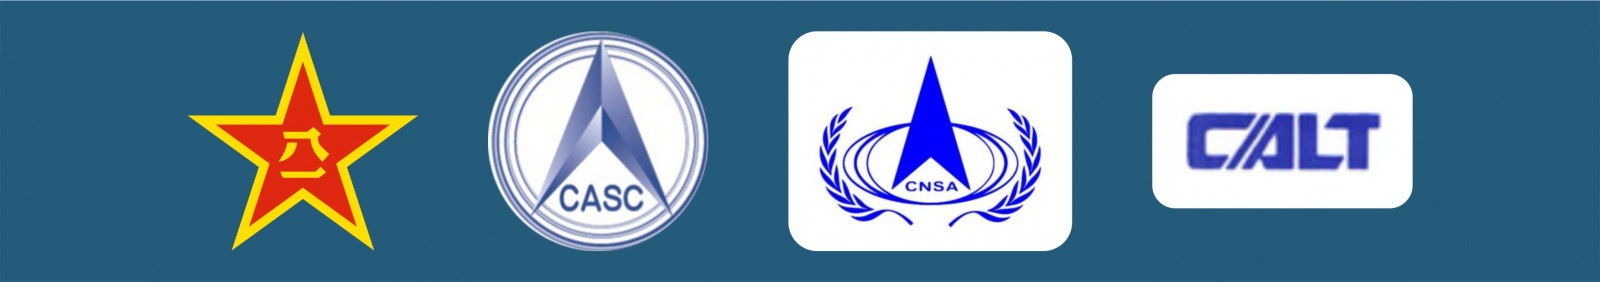 Логотипы и патчи миссии